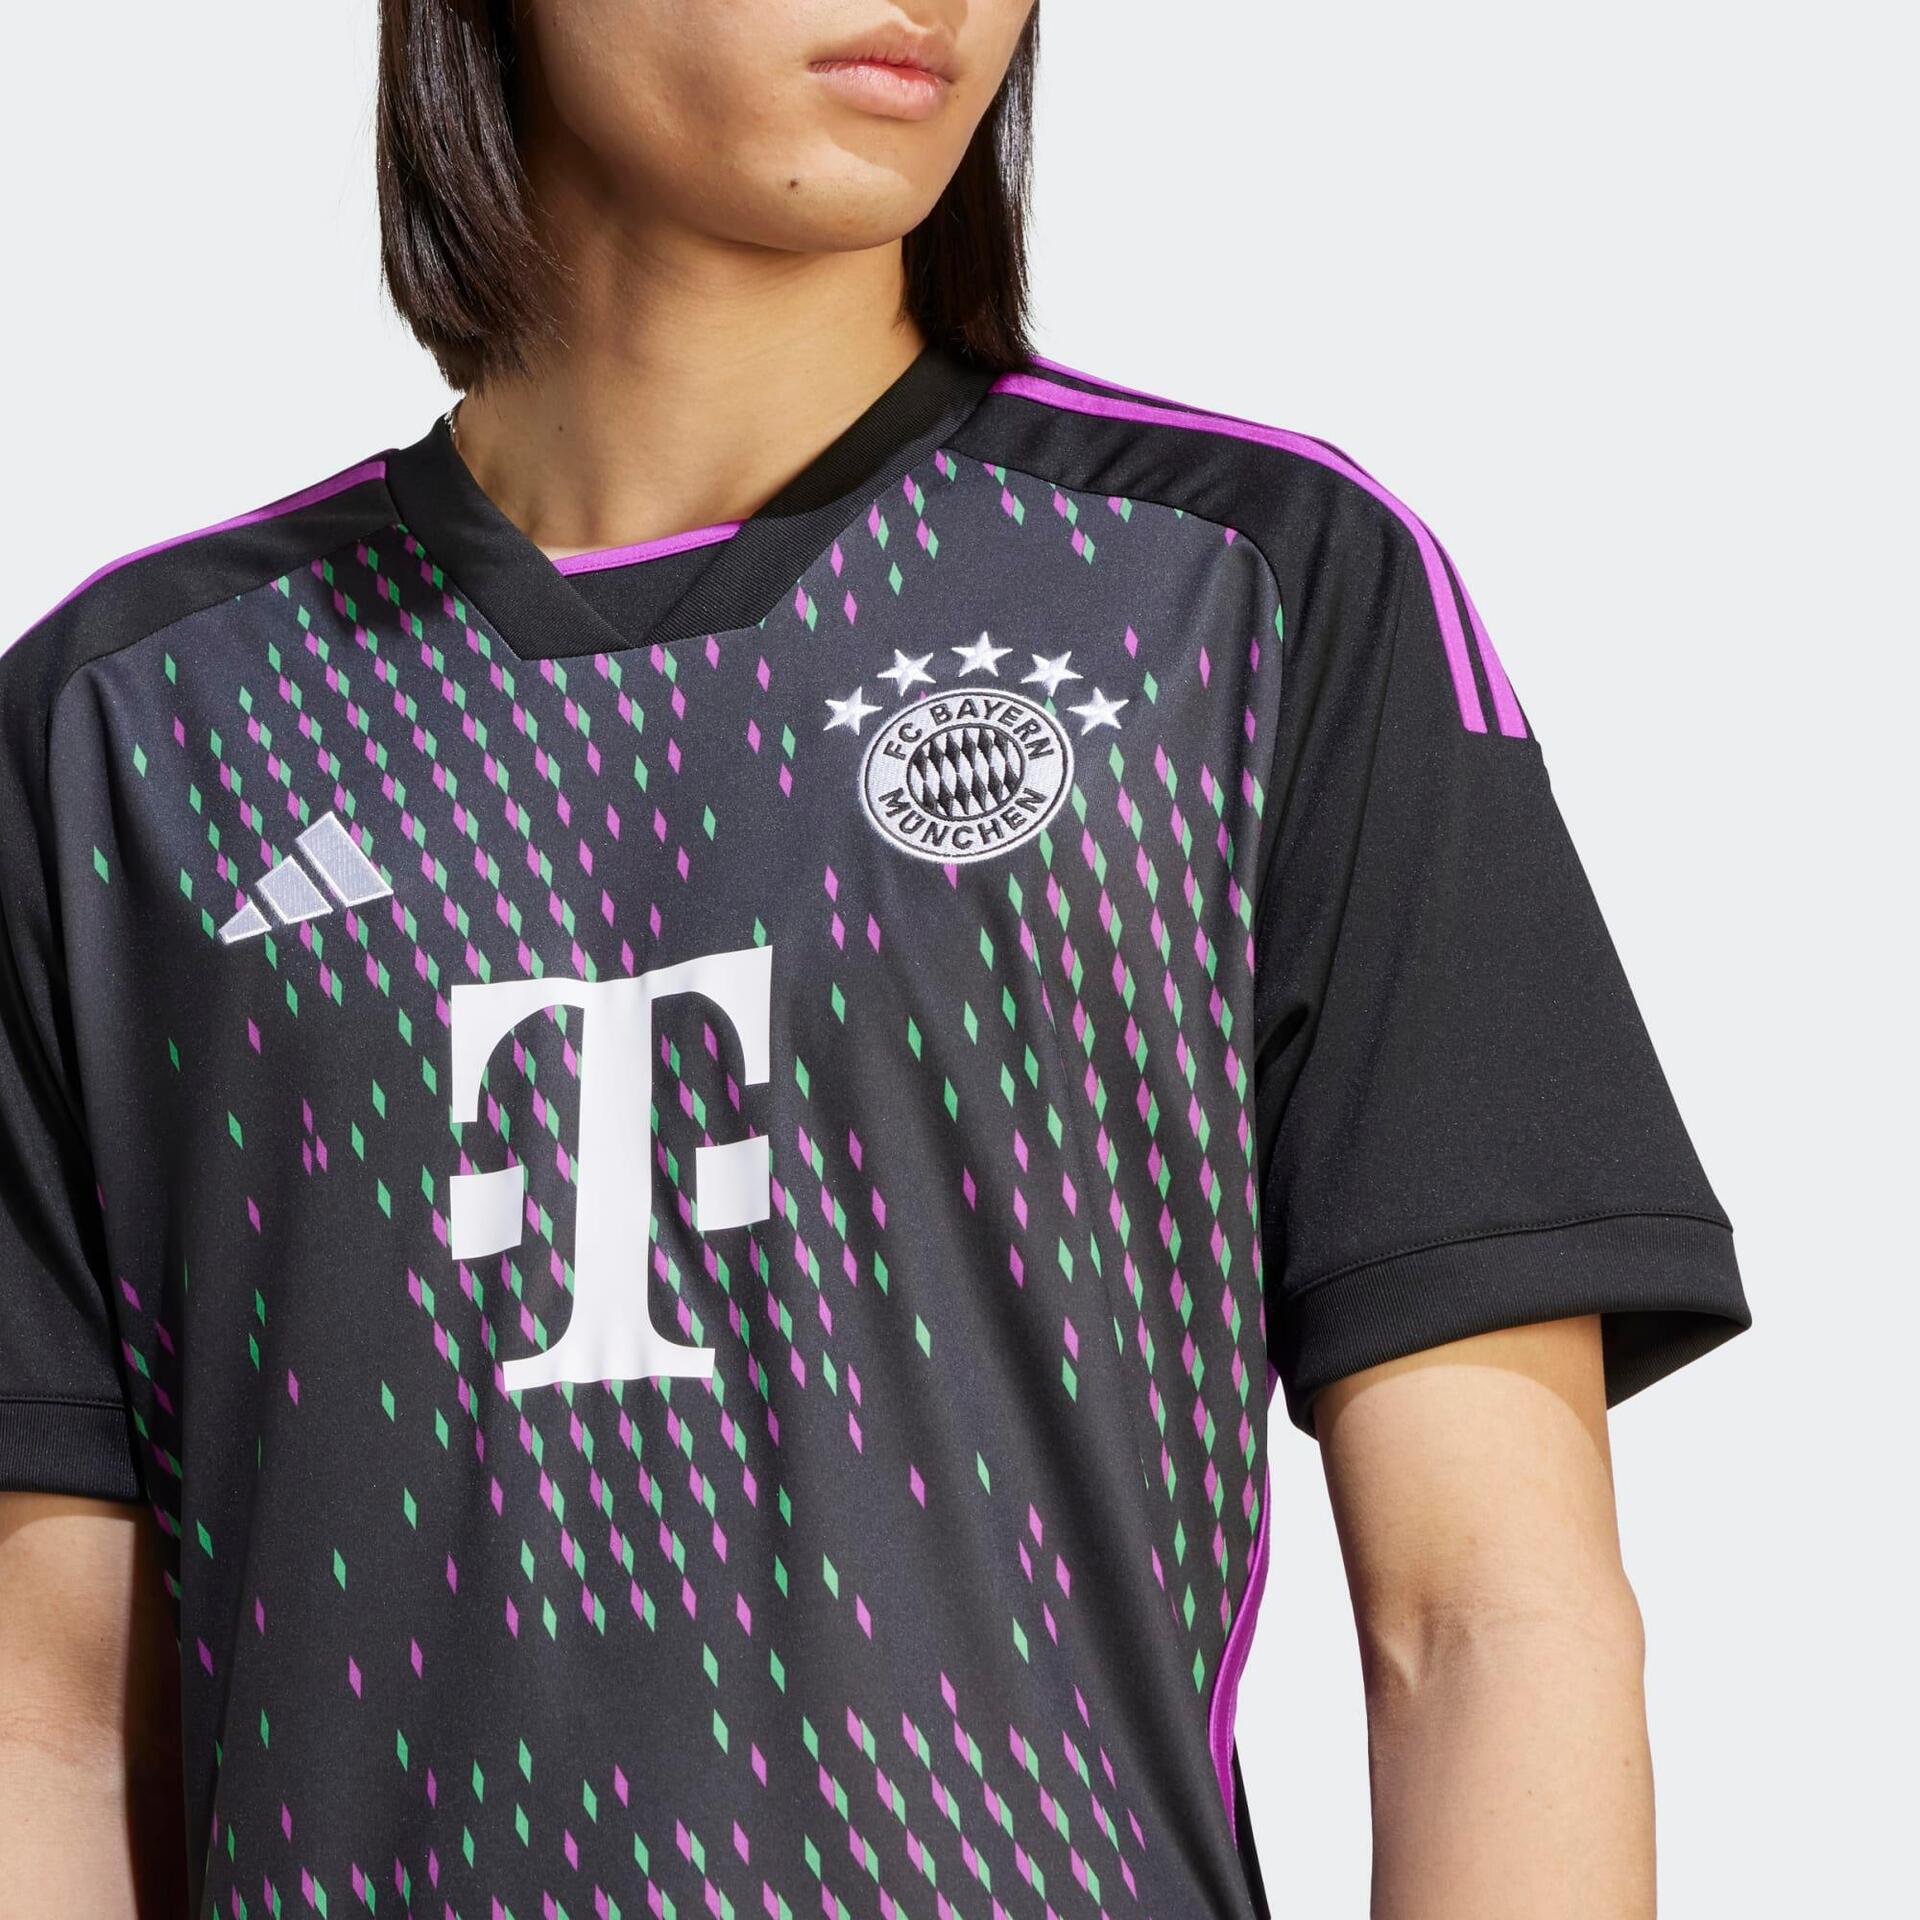 Maillots de football Adidas du Bayern Munich pour les joueurs et les supporters